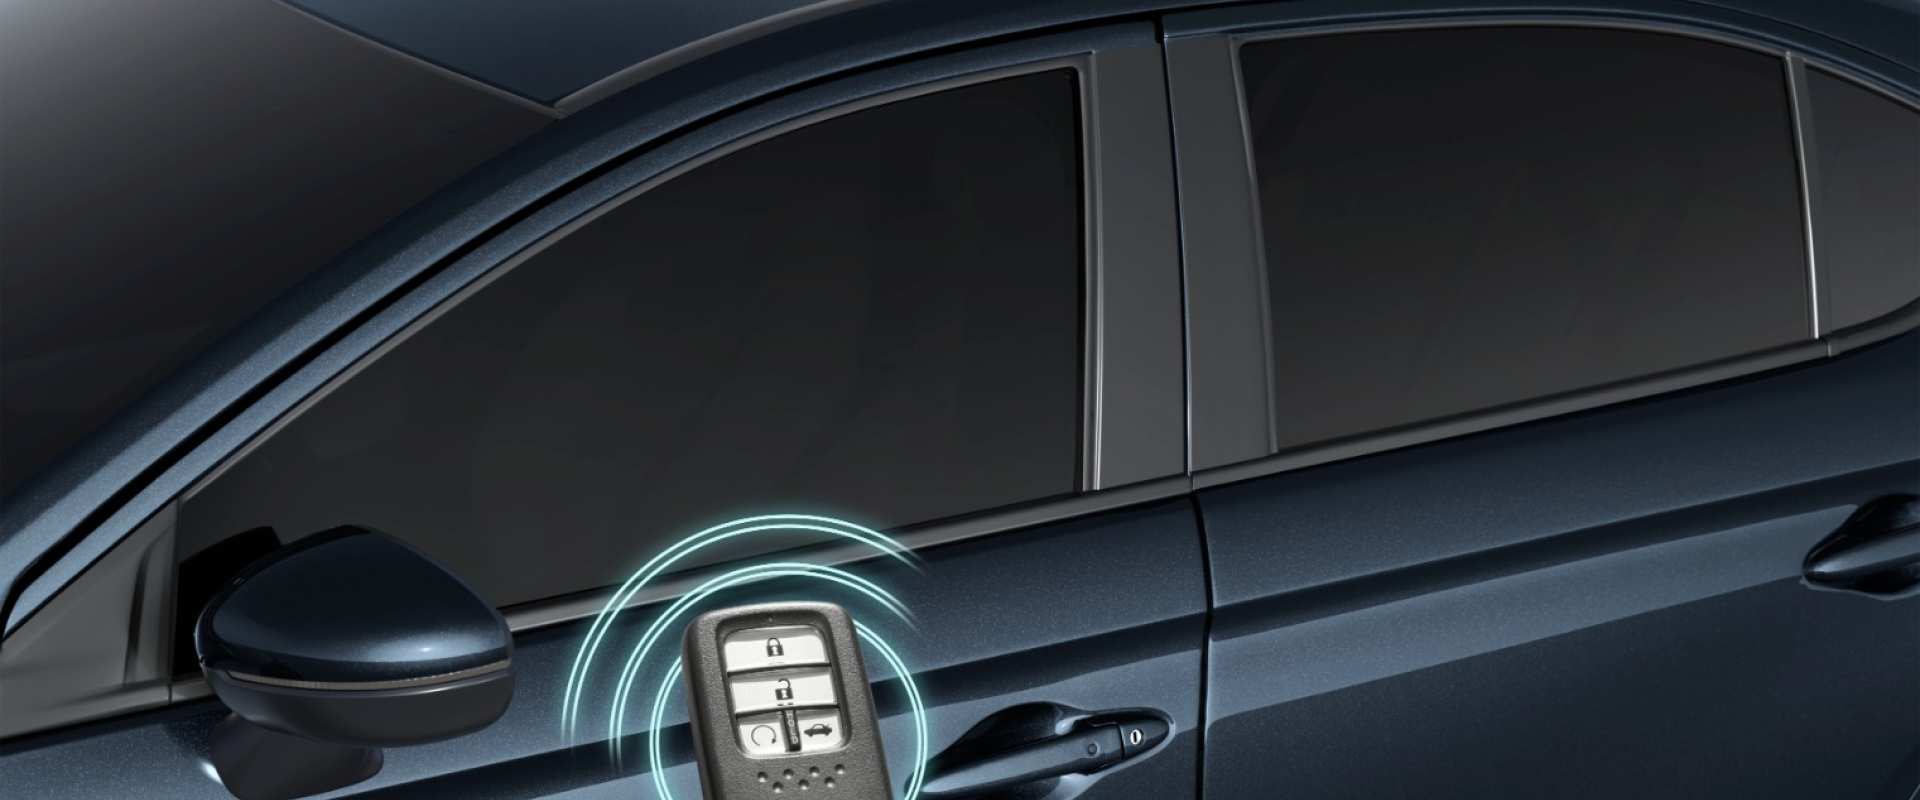 Honda City - Chave com função Smart Entry